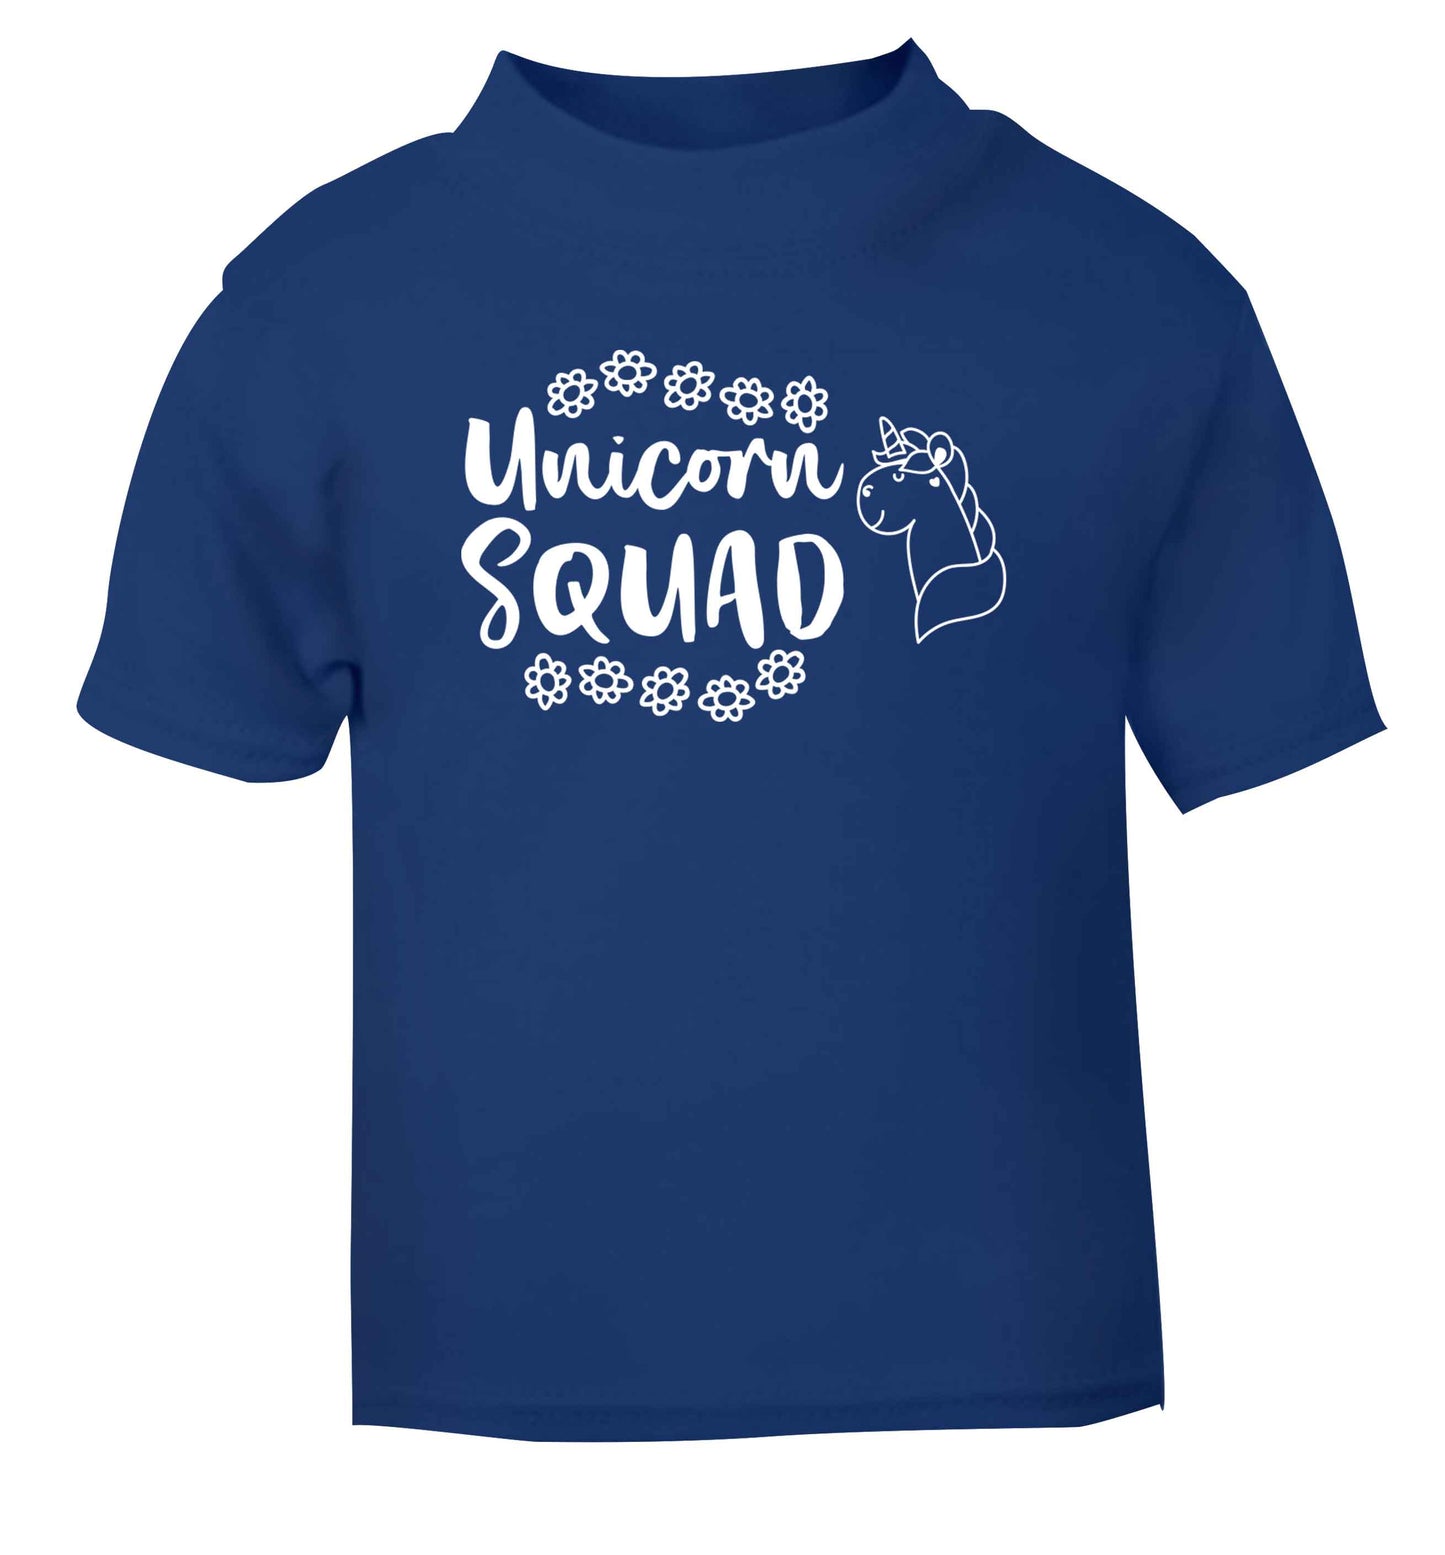 Unicorn Squad blue Baby Toddler Tshirt 2 Years